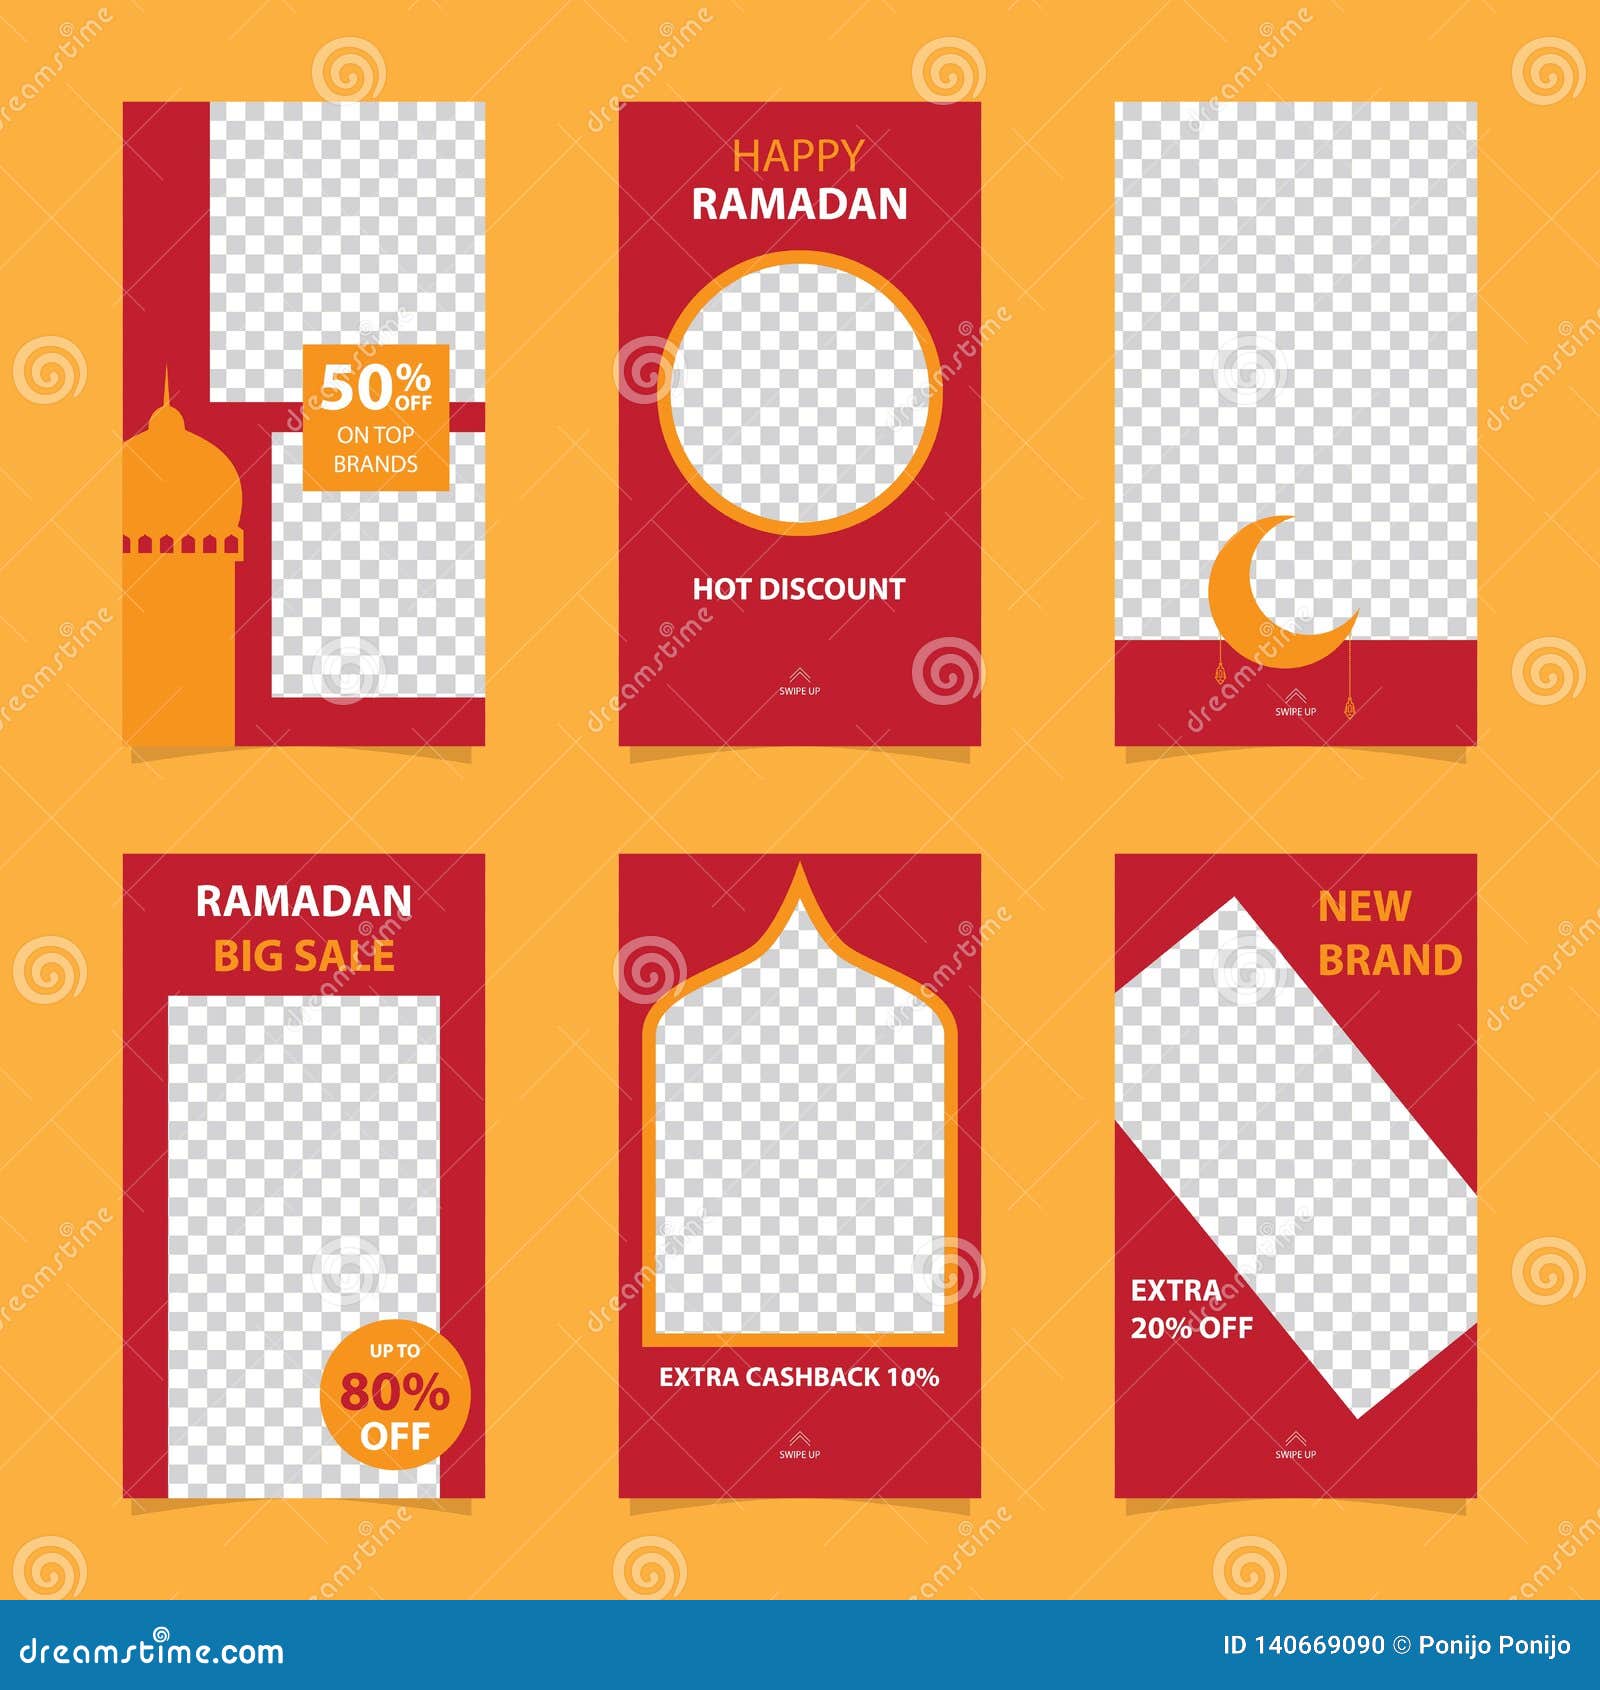 Chương trình khuyến mãi Ramadan đang đến rất gần, hãy chuẩn bị cho mình một dịp mua sắm đầy ưu đãi. Để thu hút khách hàng, hãy trang trí trang Instagram của bạn với những banner khuyến mãi ấn tượng nhất. Chúng tôi sẵn sàng cung cấp cho bạn những thiết kế độc đáo và chuyên nghiệp nhất.